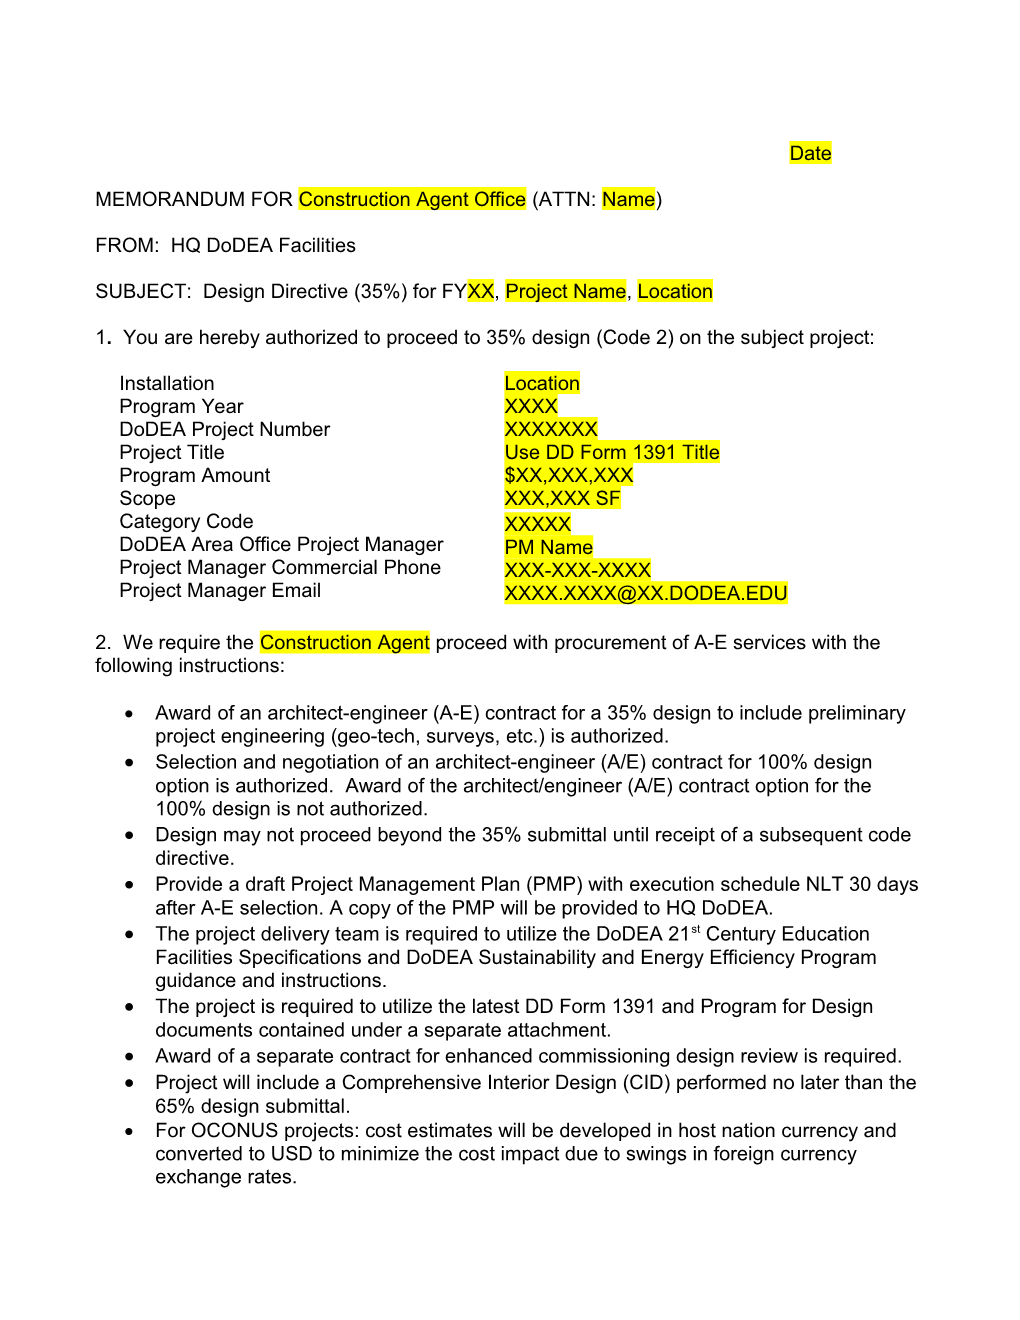 ASD (FMP) - Cover Brief Memorandum (Revised 2/9/95) Mnd